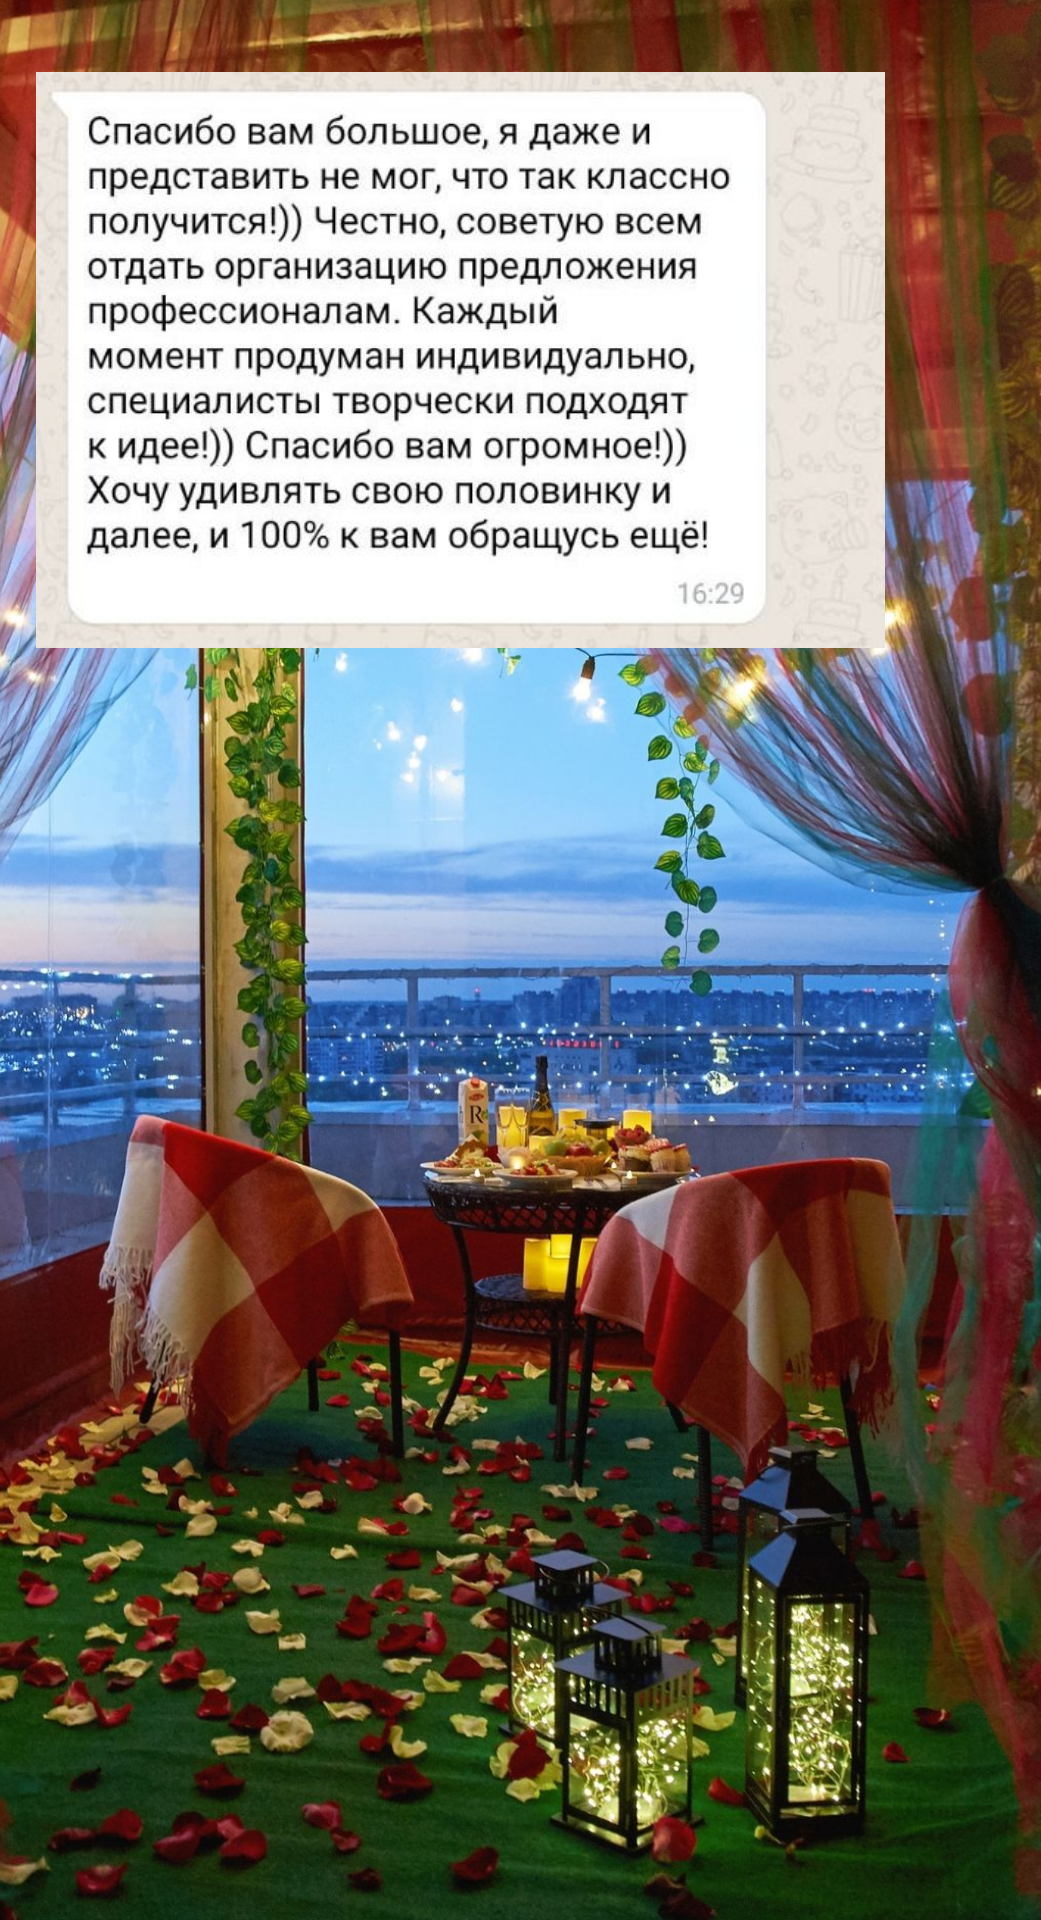 Организация предложения руки и сердца в Новокузнецке
от компании Pandaevent